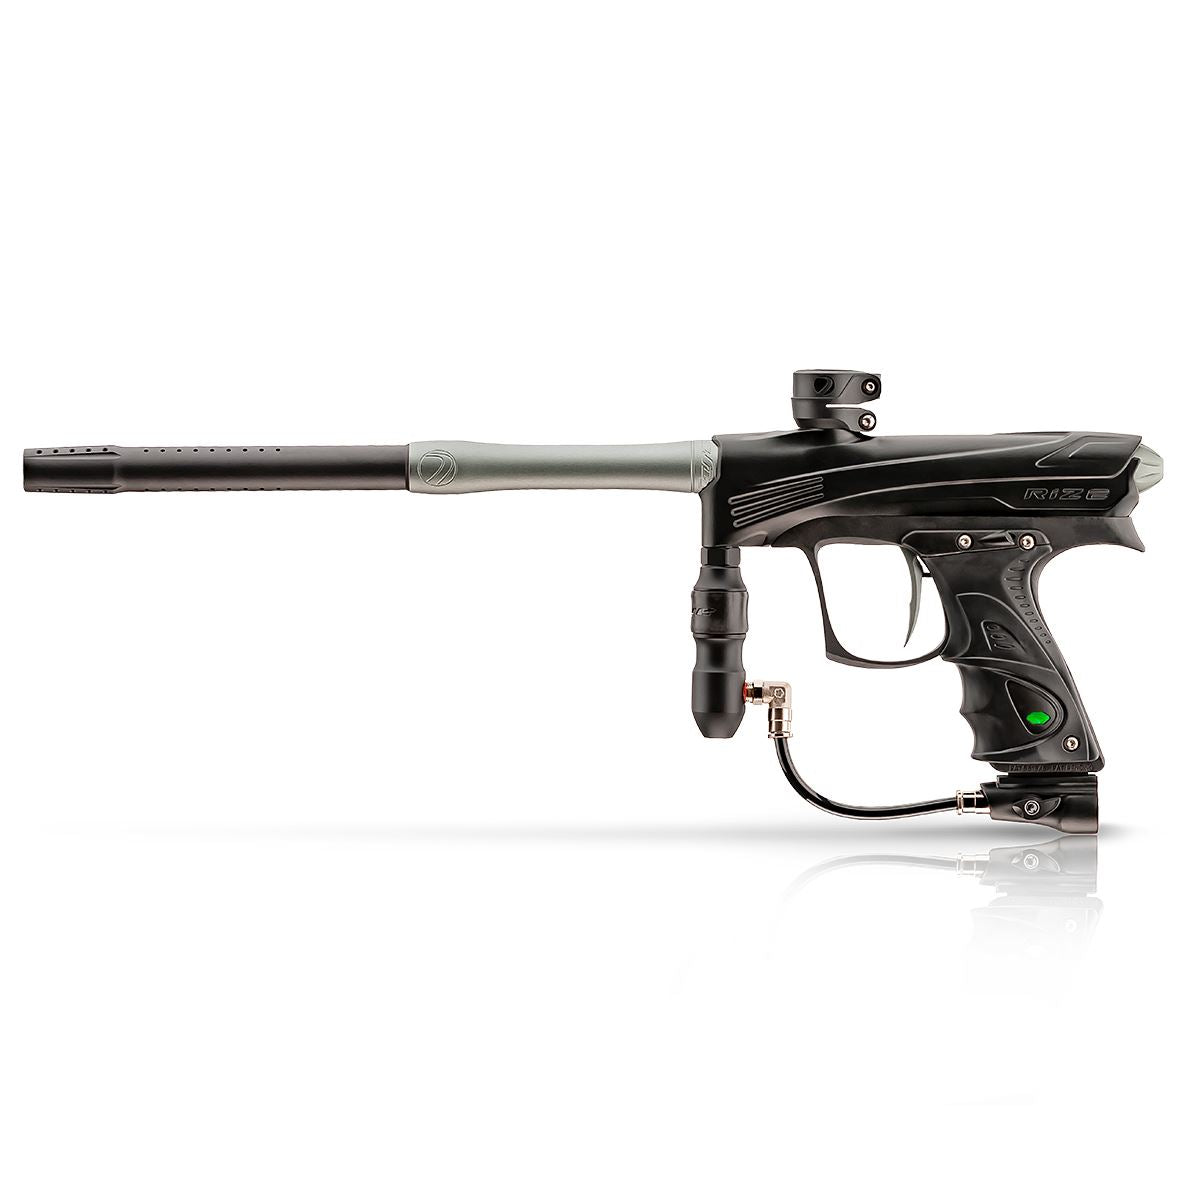 Dye Rize CZR Automatic Paintball Gun Marker  - Black / Grey Dye